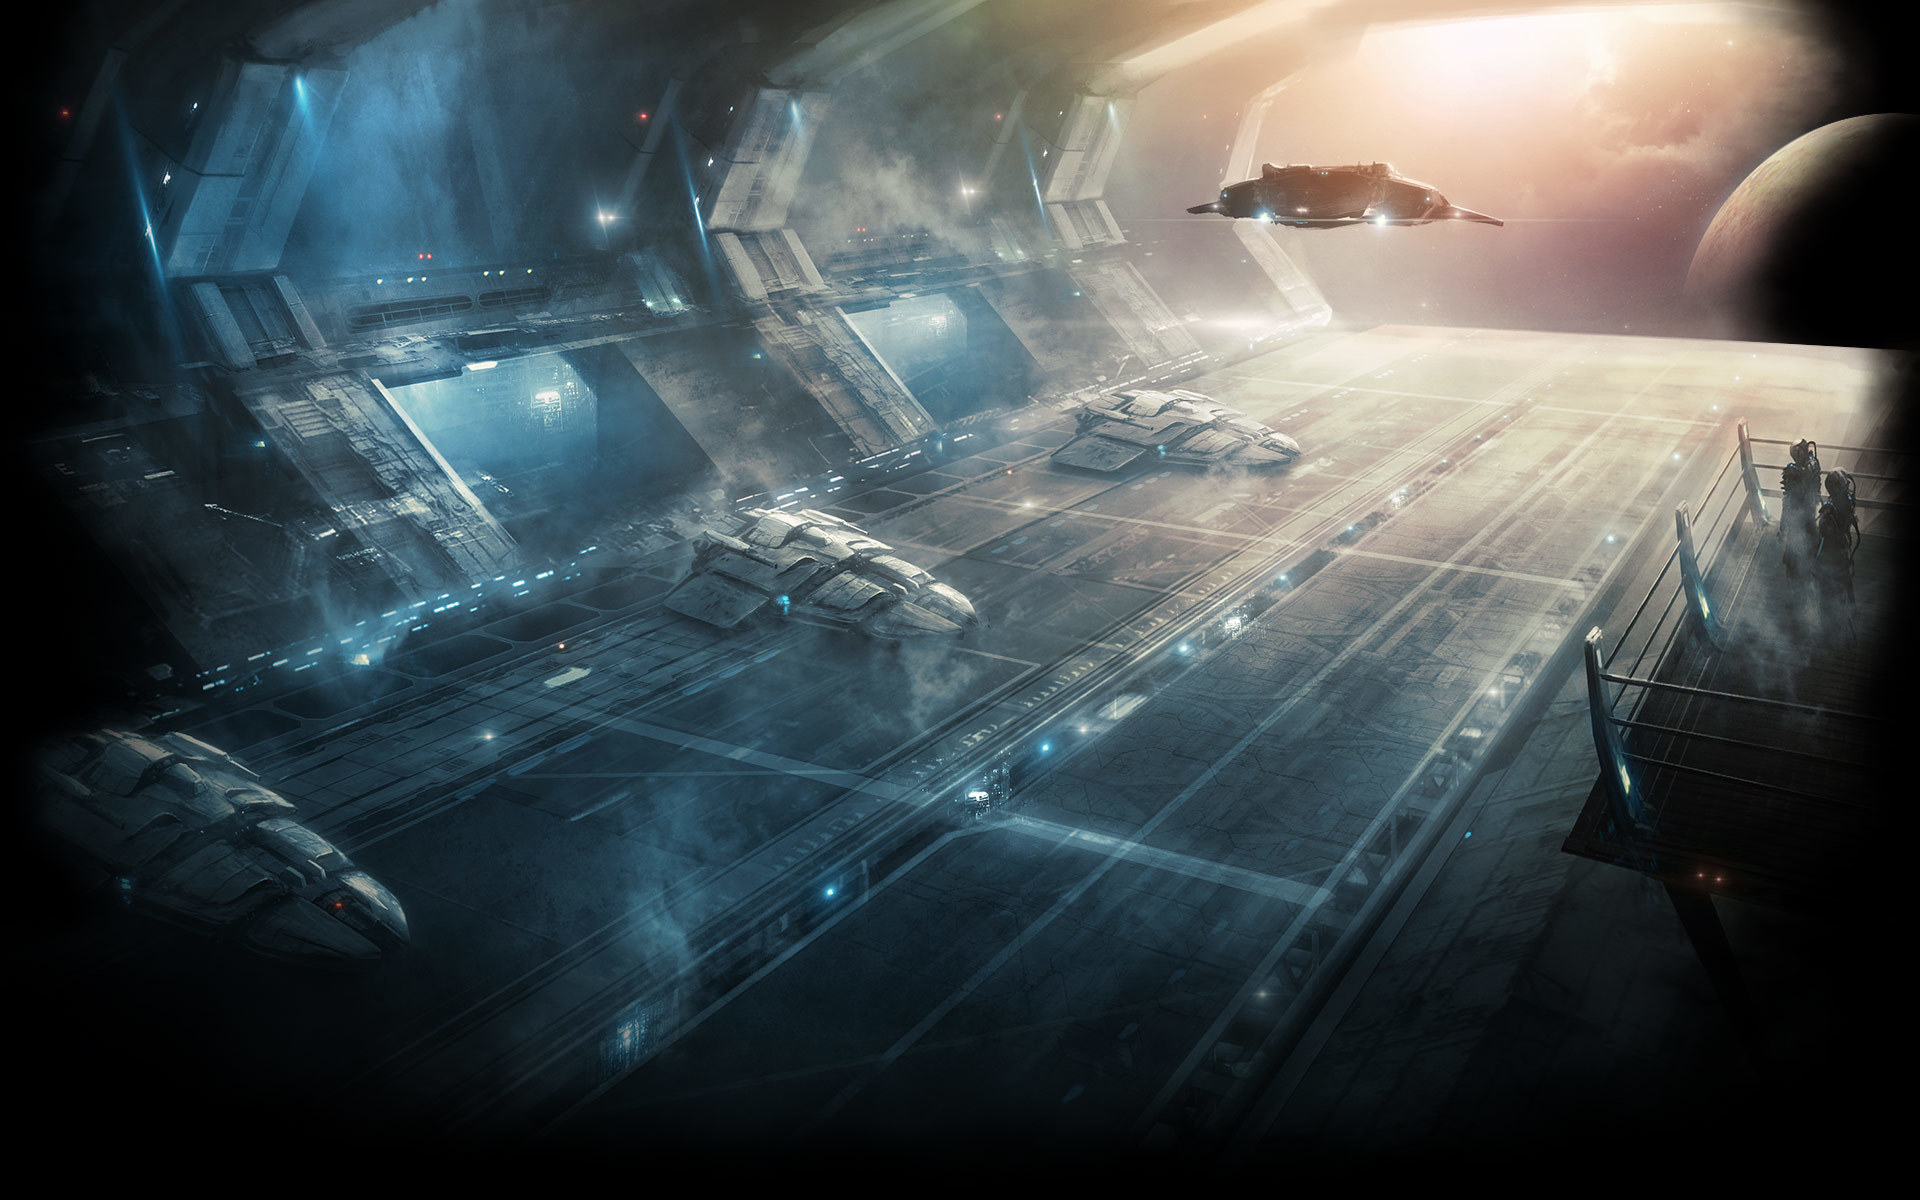 Video Game Stellaris HD Wallpaper | Background Image